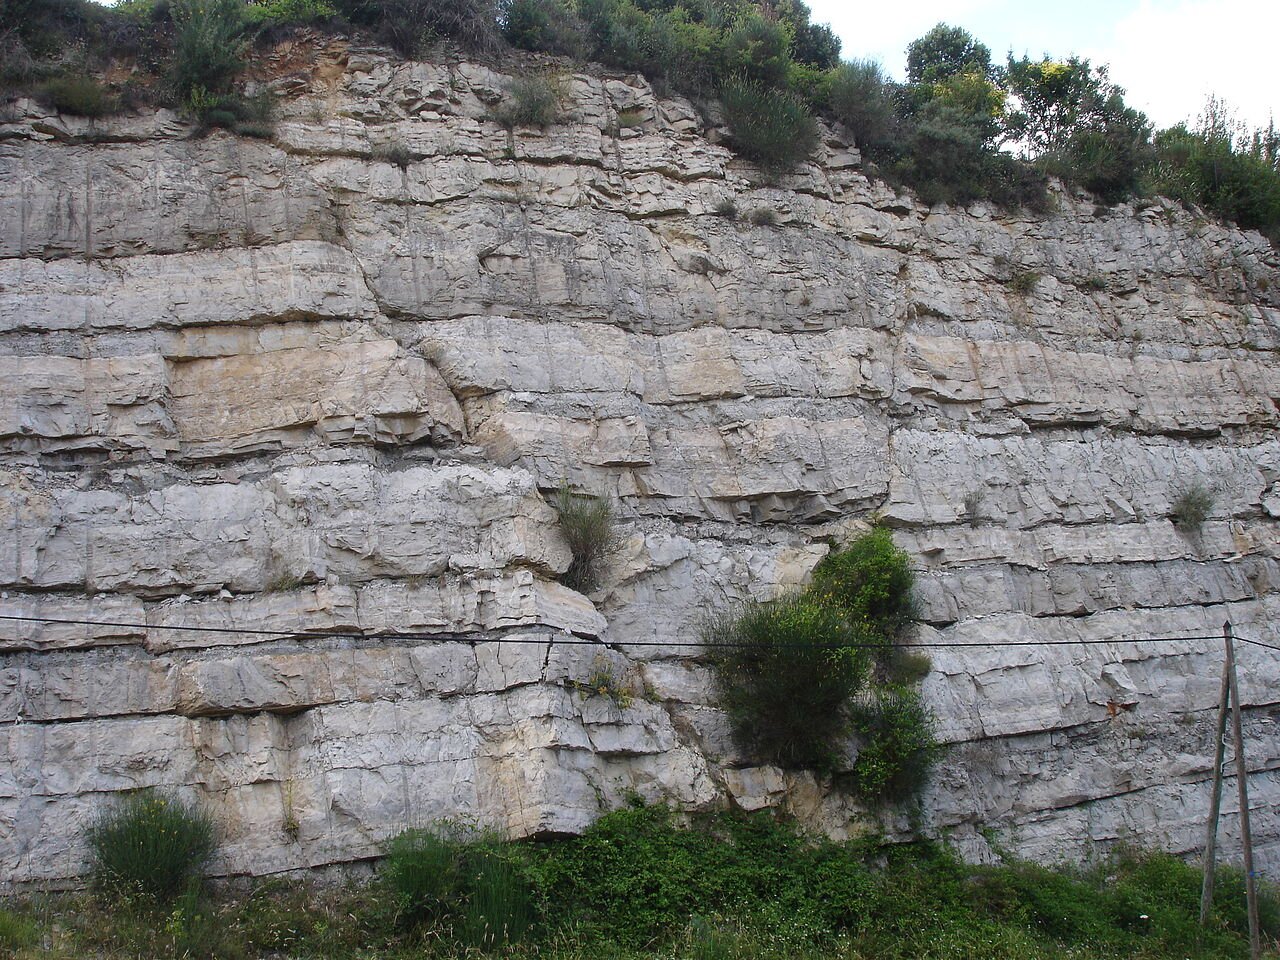 Na zdjęciu widoczna jest ściana skalna. Wyodrębnione na niej są zręby i rowy tektoniczne. Ściana jest pionowa i składa się z jasnych warstw skalnych. W jednym miejscu widać ukośne pęknięcie ściany, które dzieli ją na dwie części. Powyżej i poniżej ściany skalnej znajduje się roślinność.